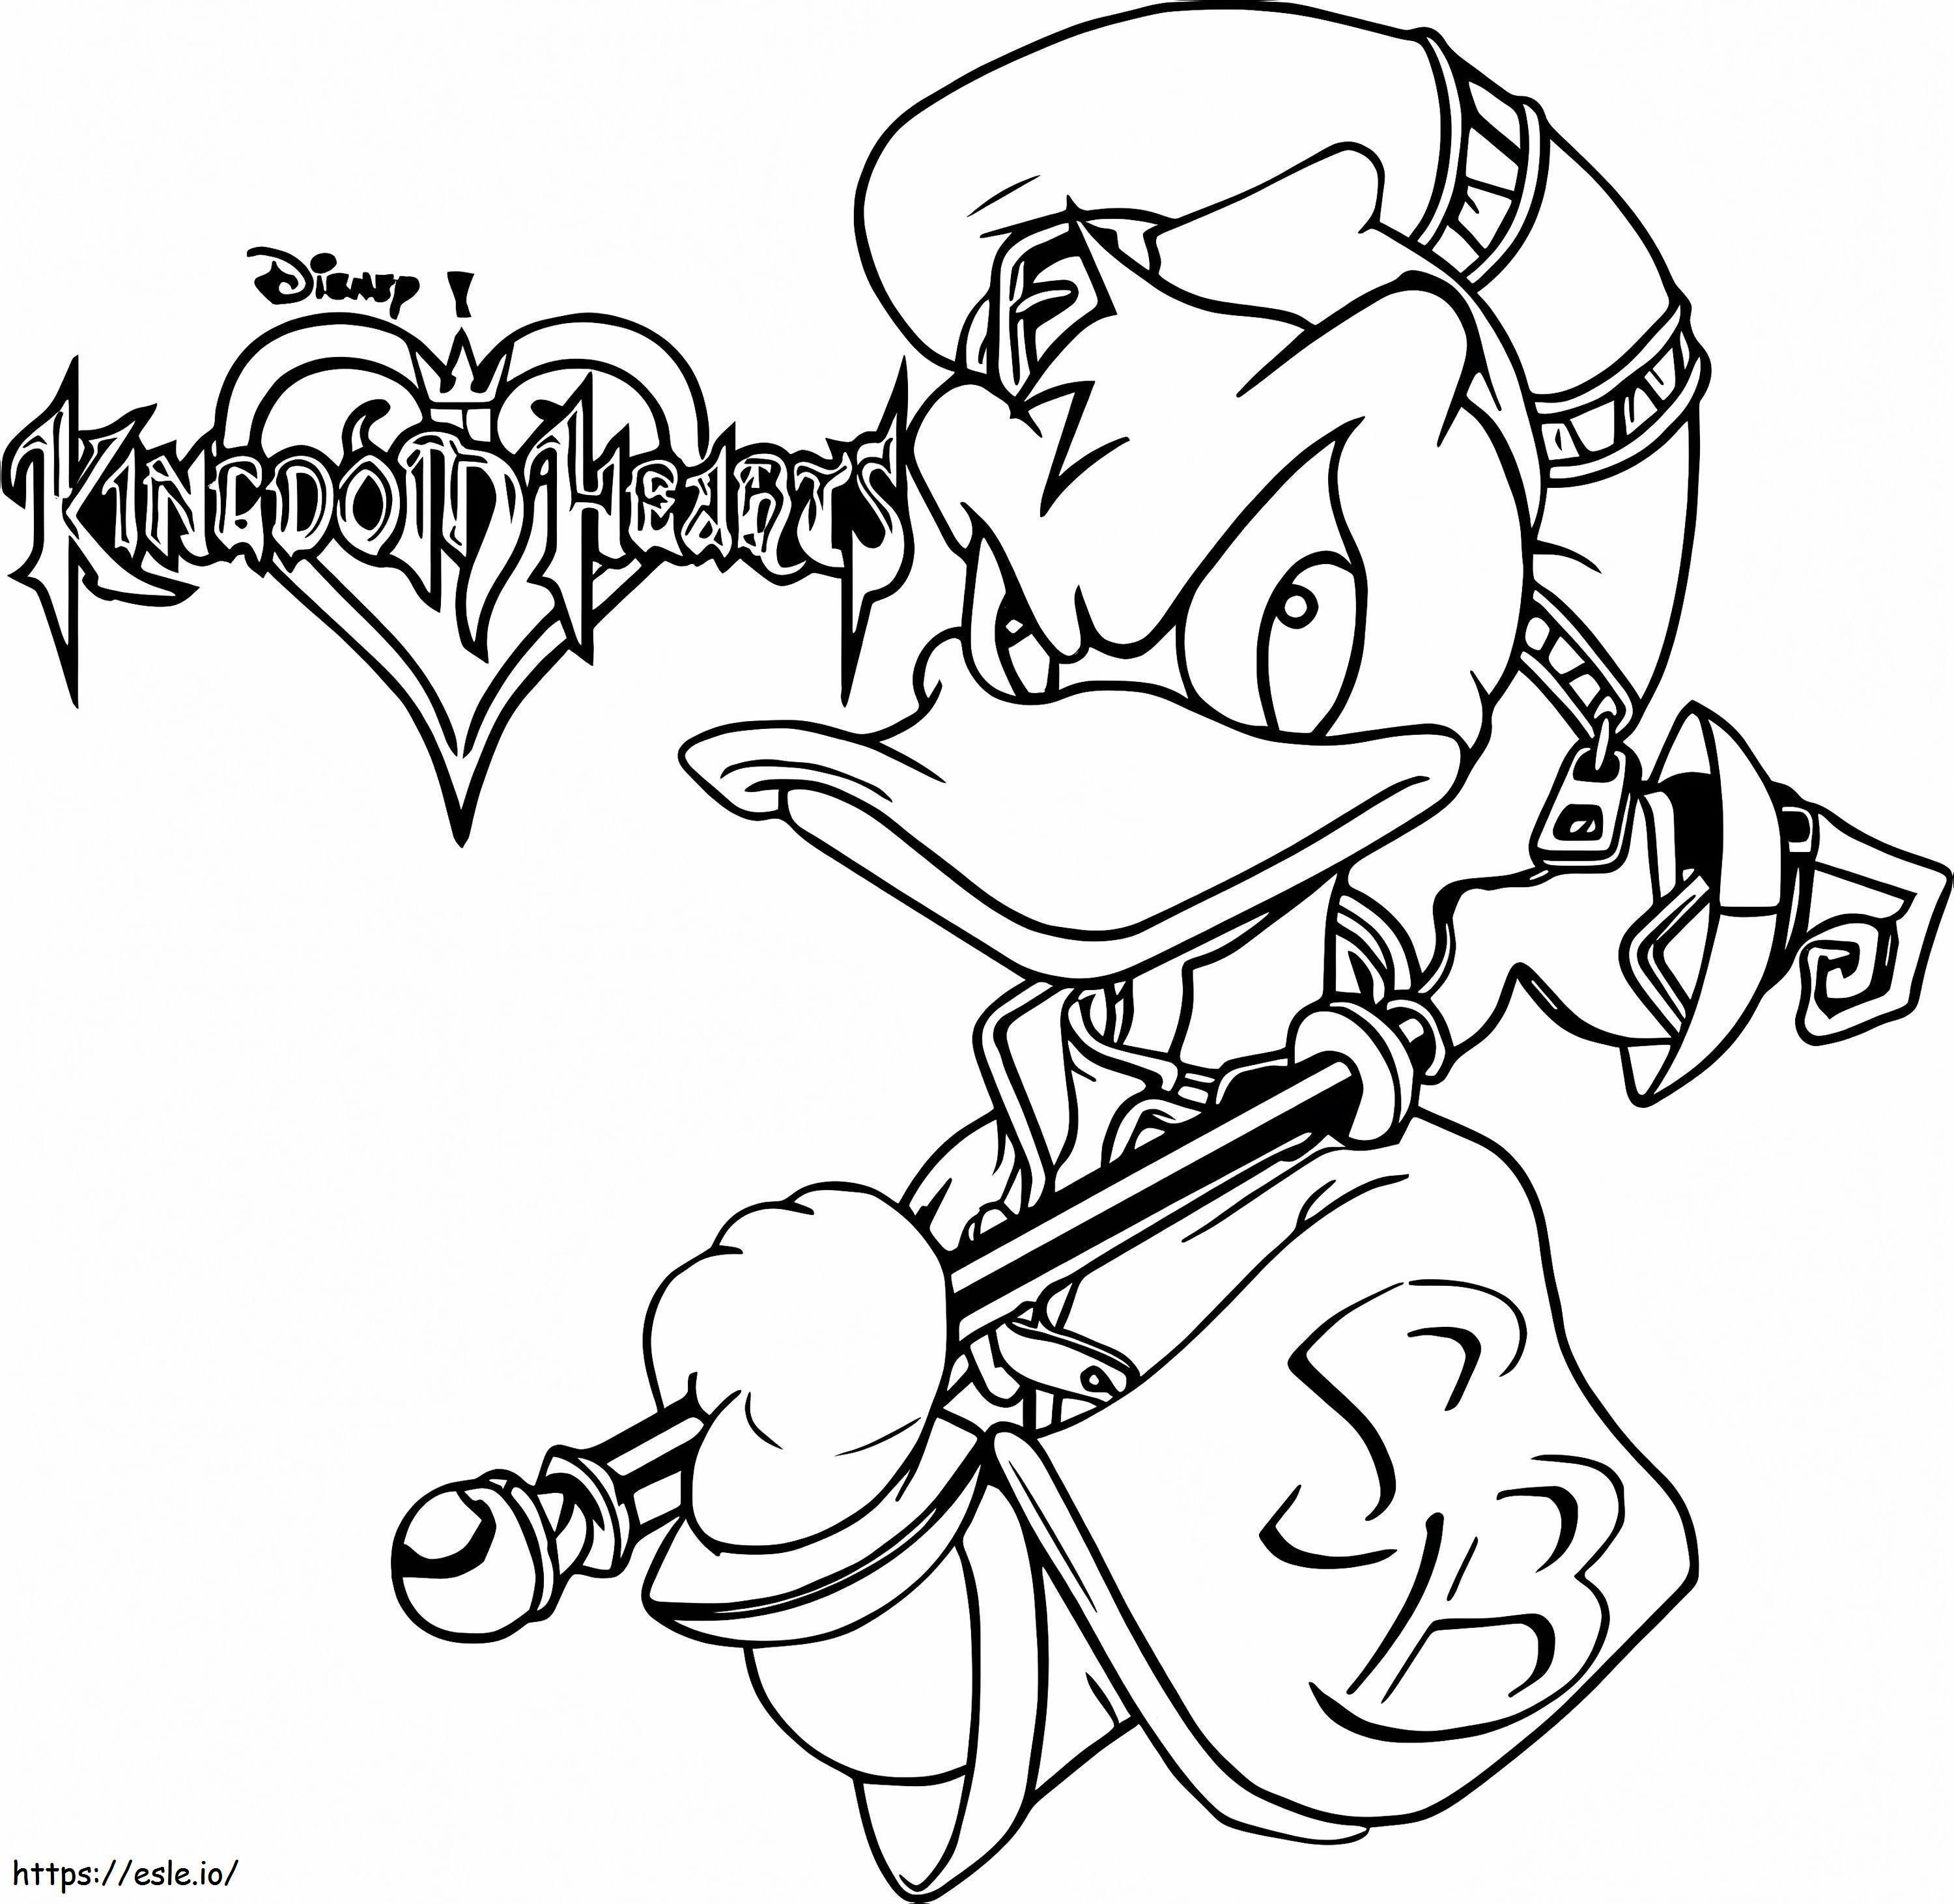 Pato Donlad de Kingdom Hearts para colorir